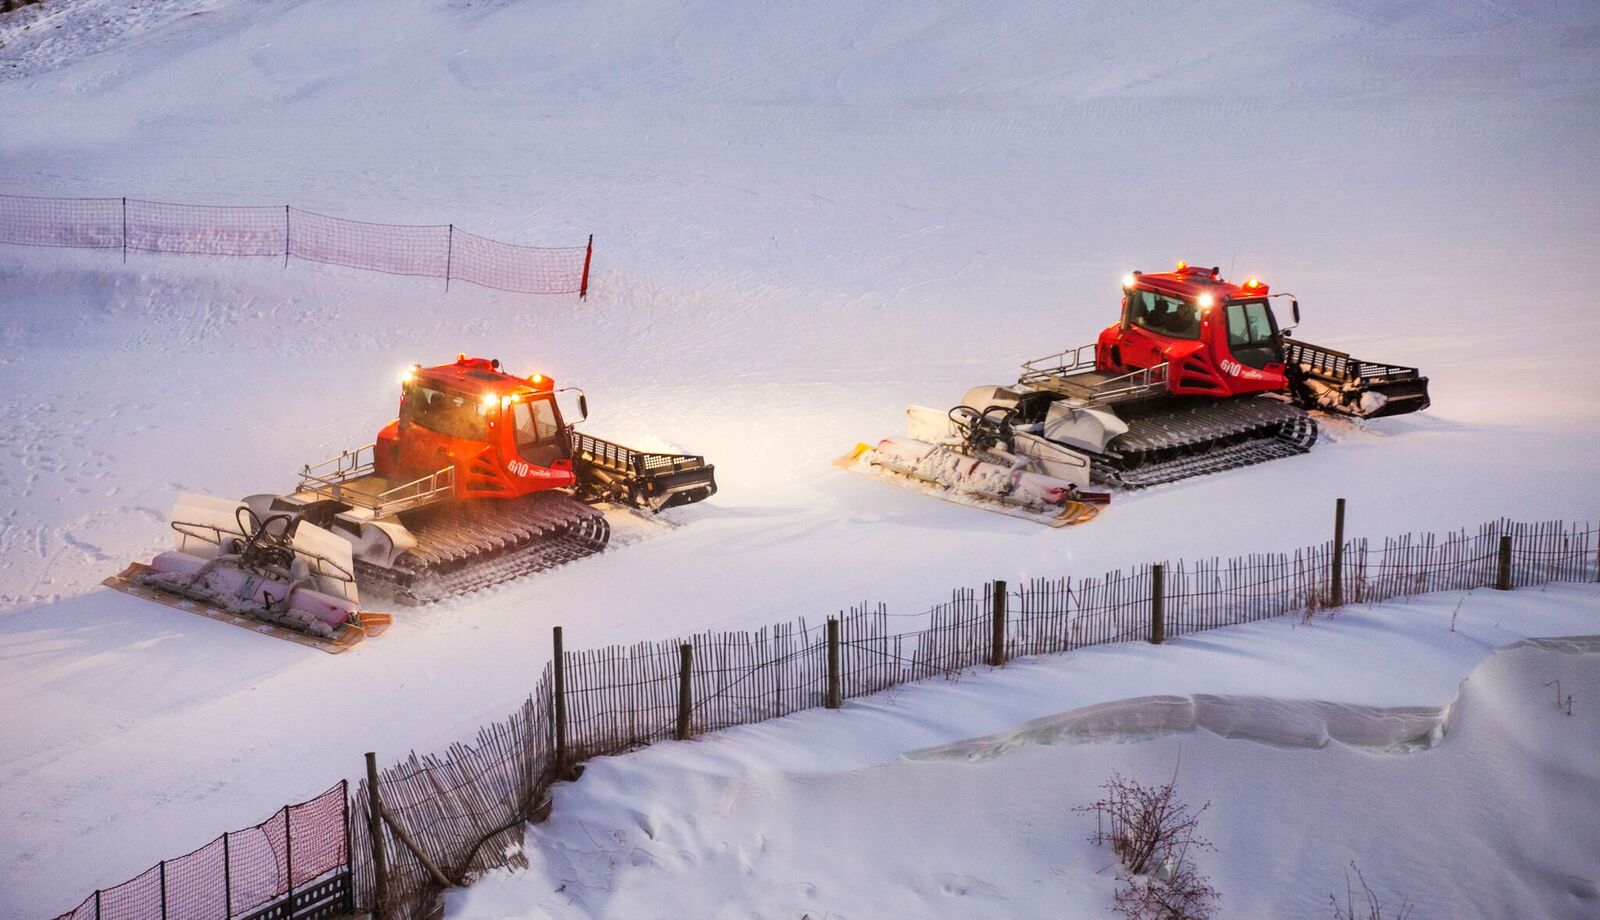 Grandvalira: 13 millones de inversión para mantener el dominio del esquí del sur de Europa